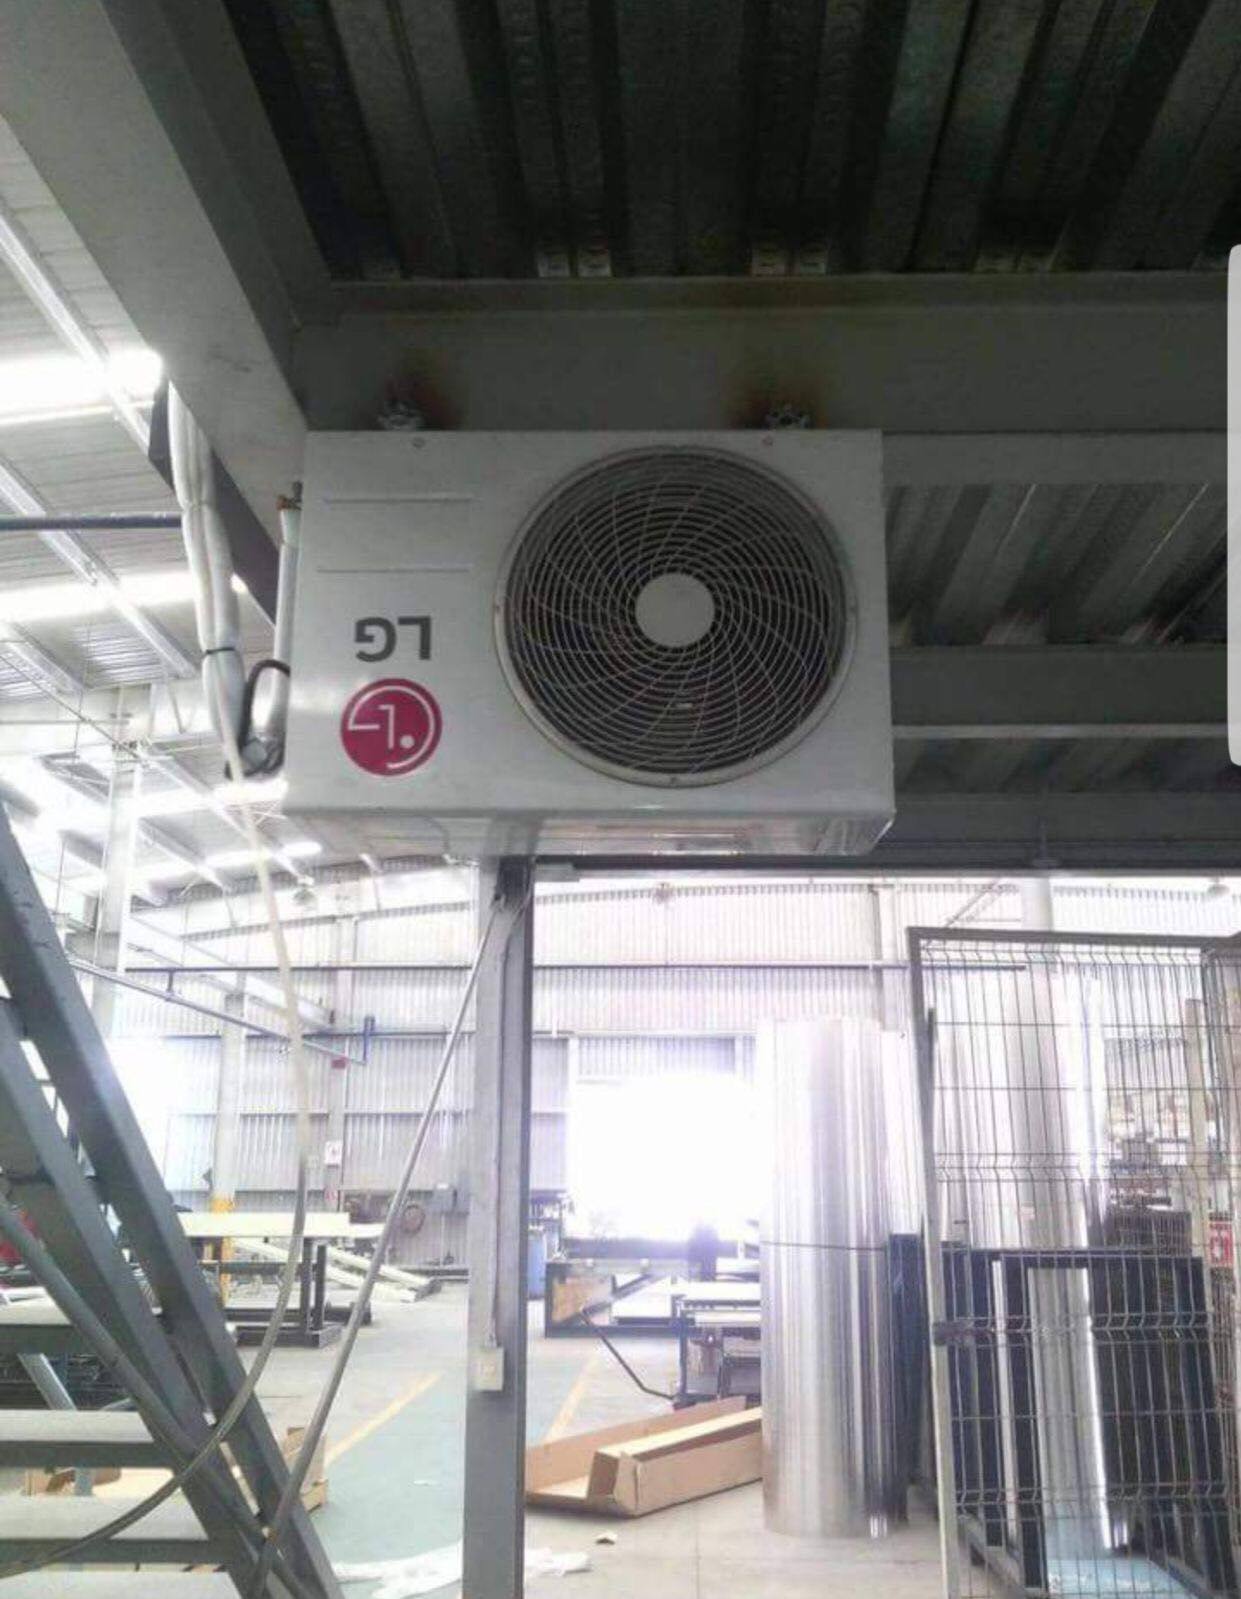 Encuentra el error: por qué este equipo de aire acondicionado no va a  funcionar como debe